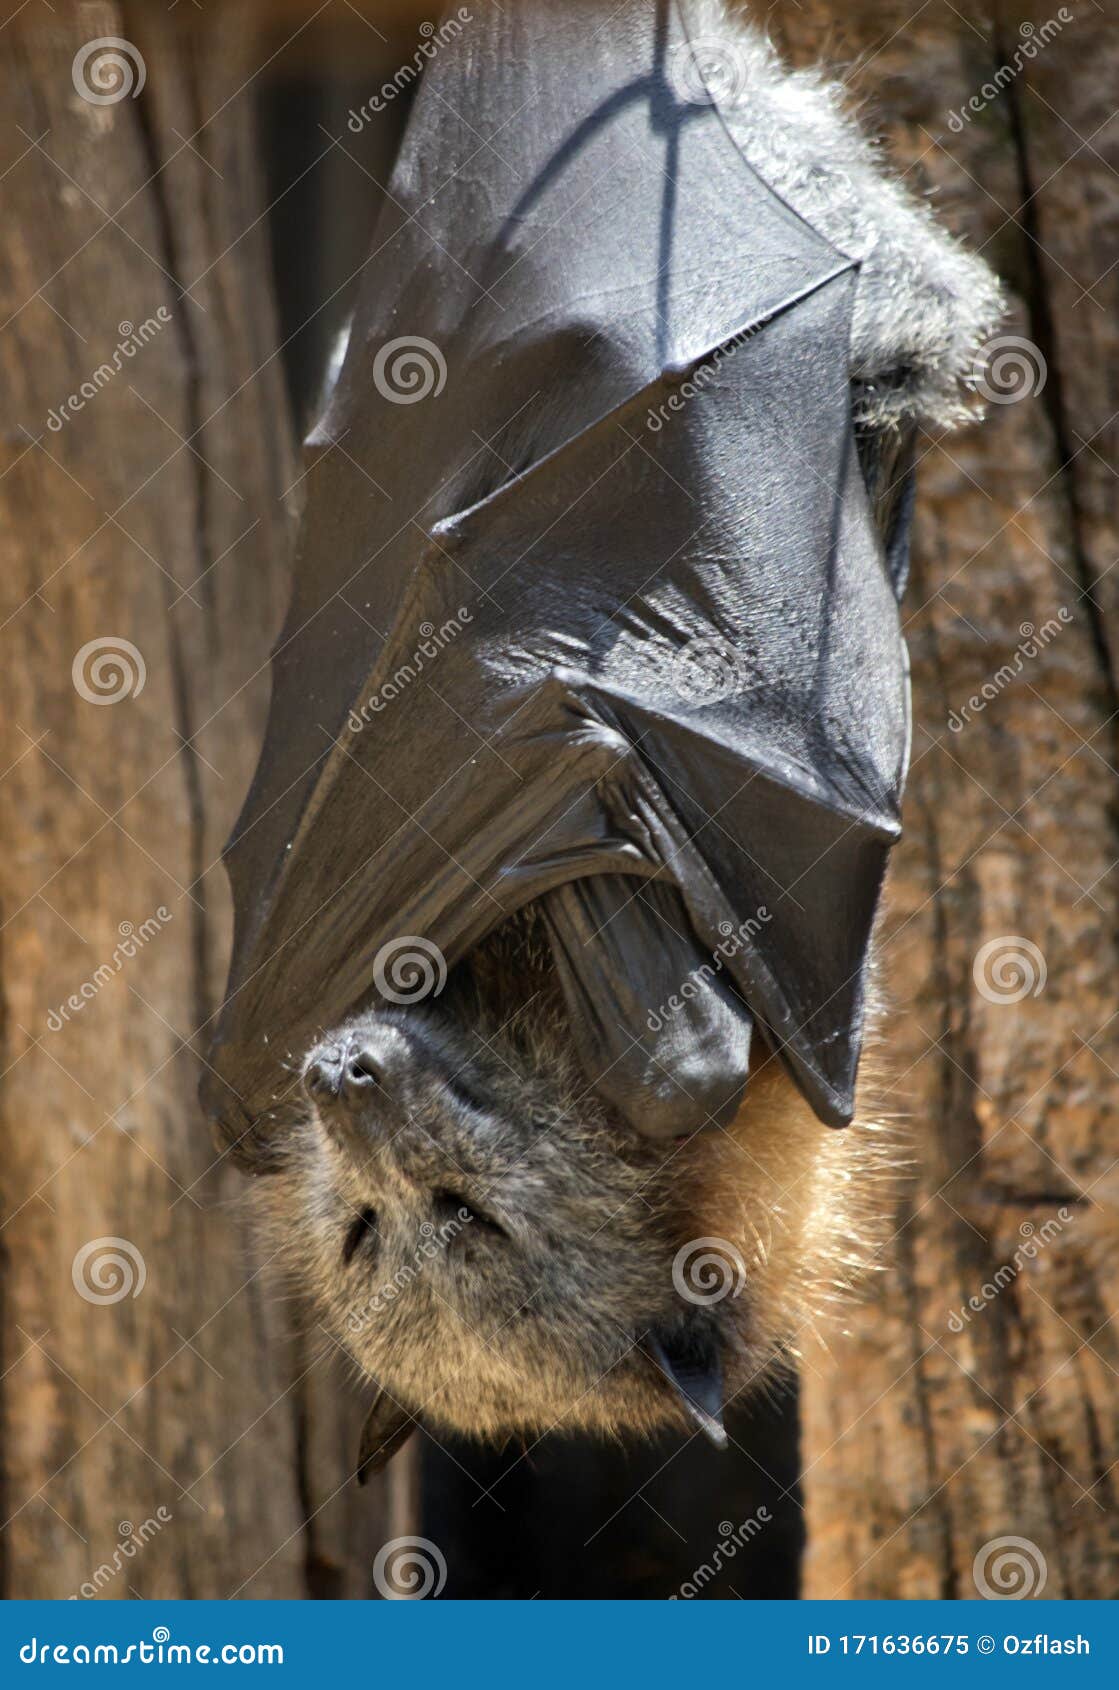 The Fruit Bat is Hanging Upside Down Stock Image - Image of animal, radar:  171636675